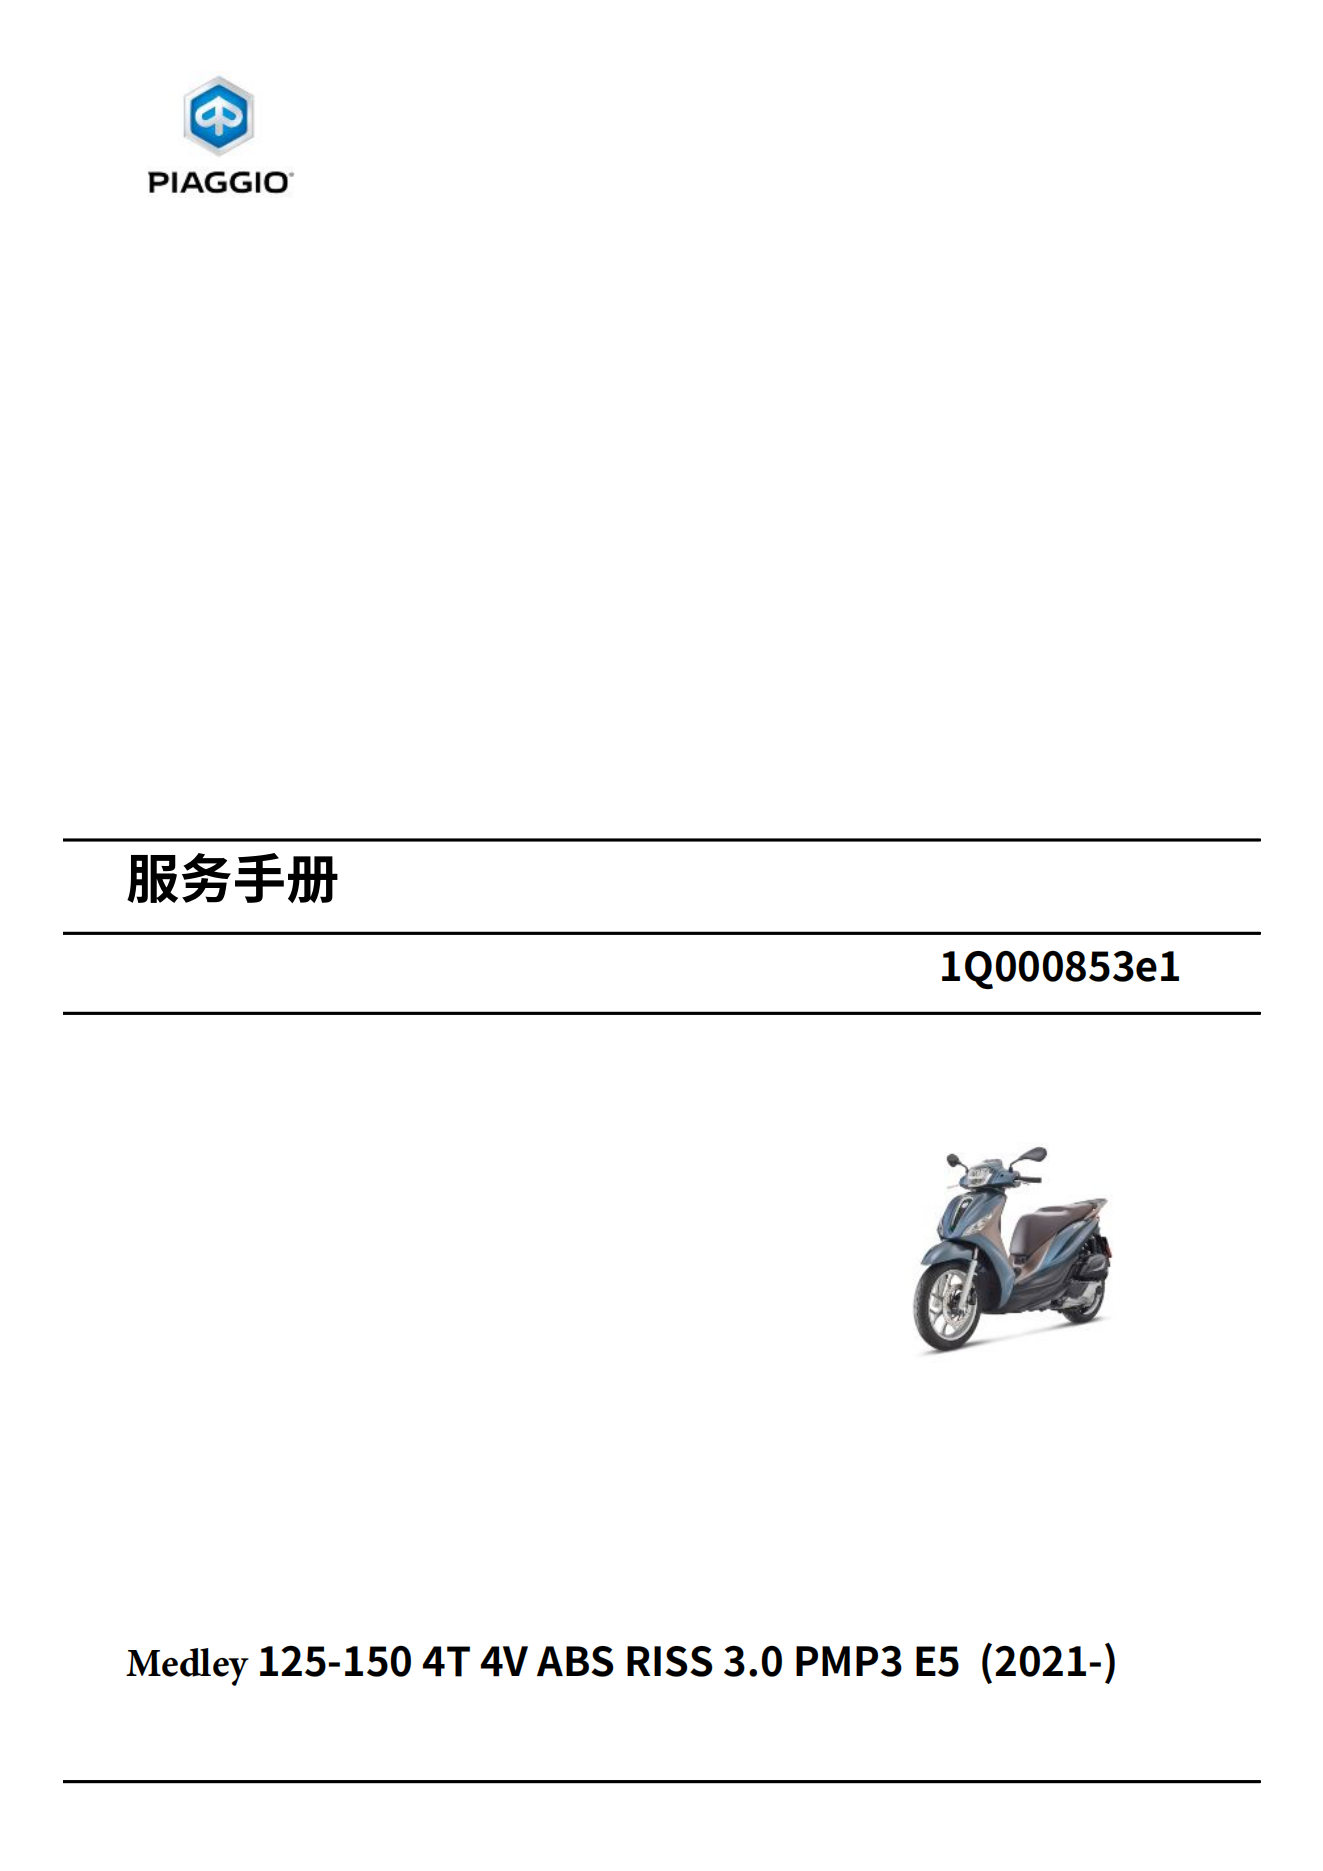 简体中文2021-2023年比亚乔Medley125-150维修手册埋地雷125埋地雷150维修手册（含高清电路图）插图1